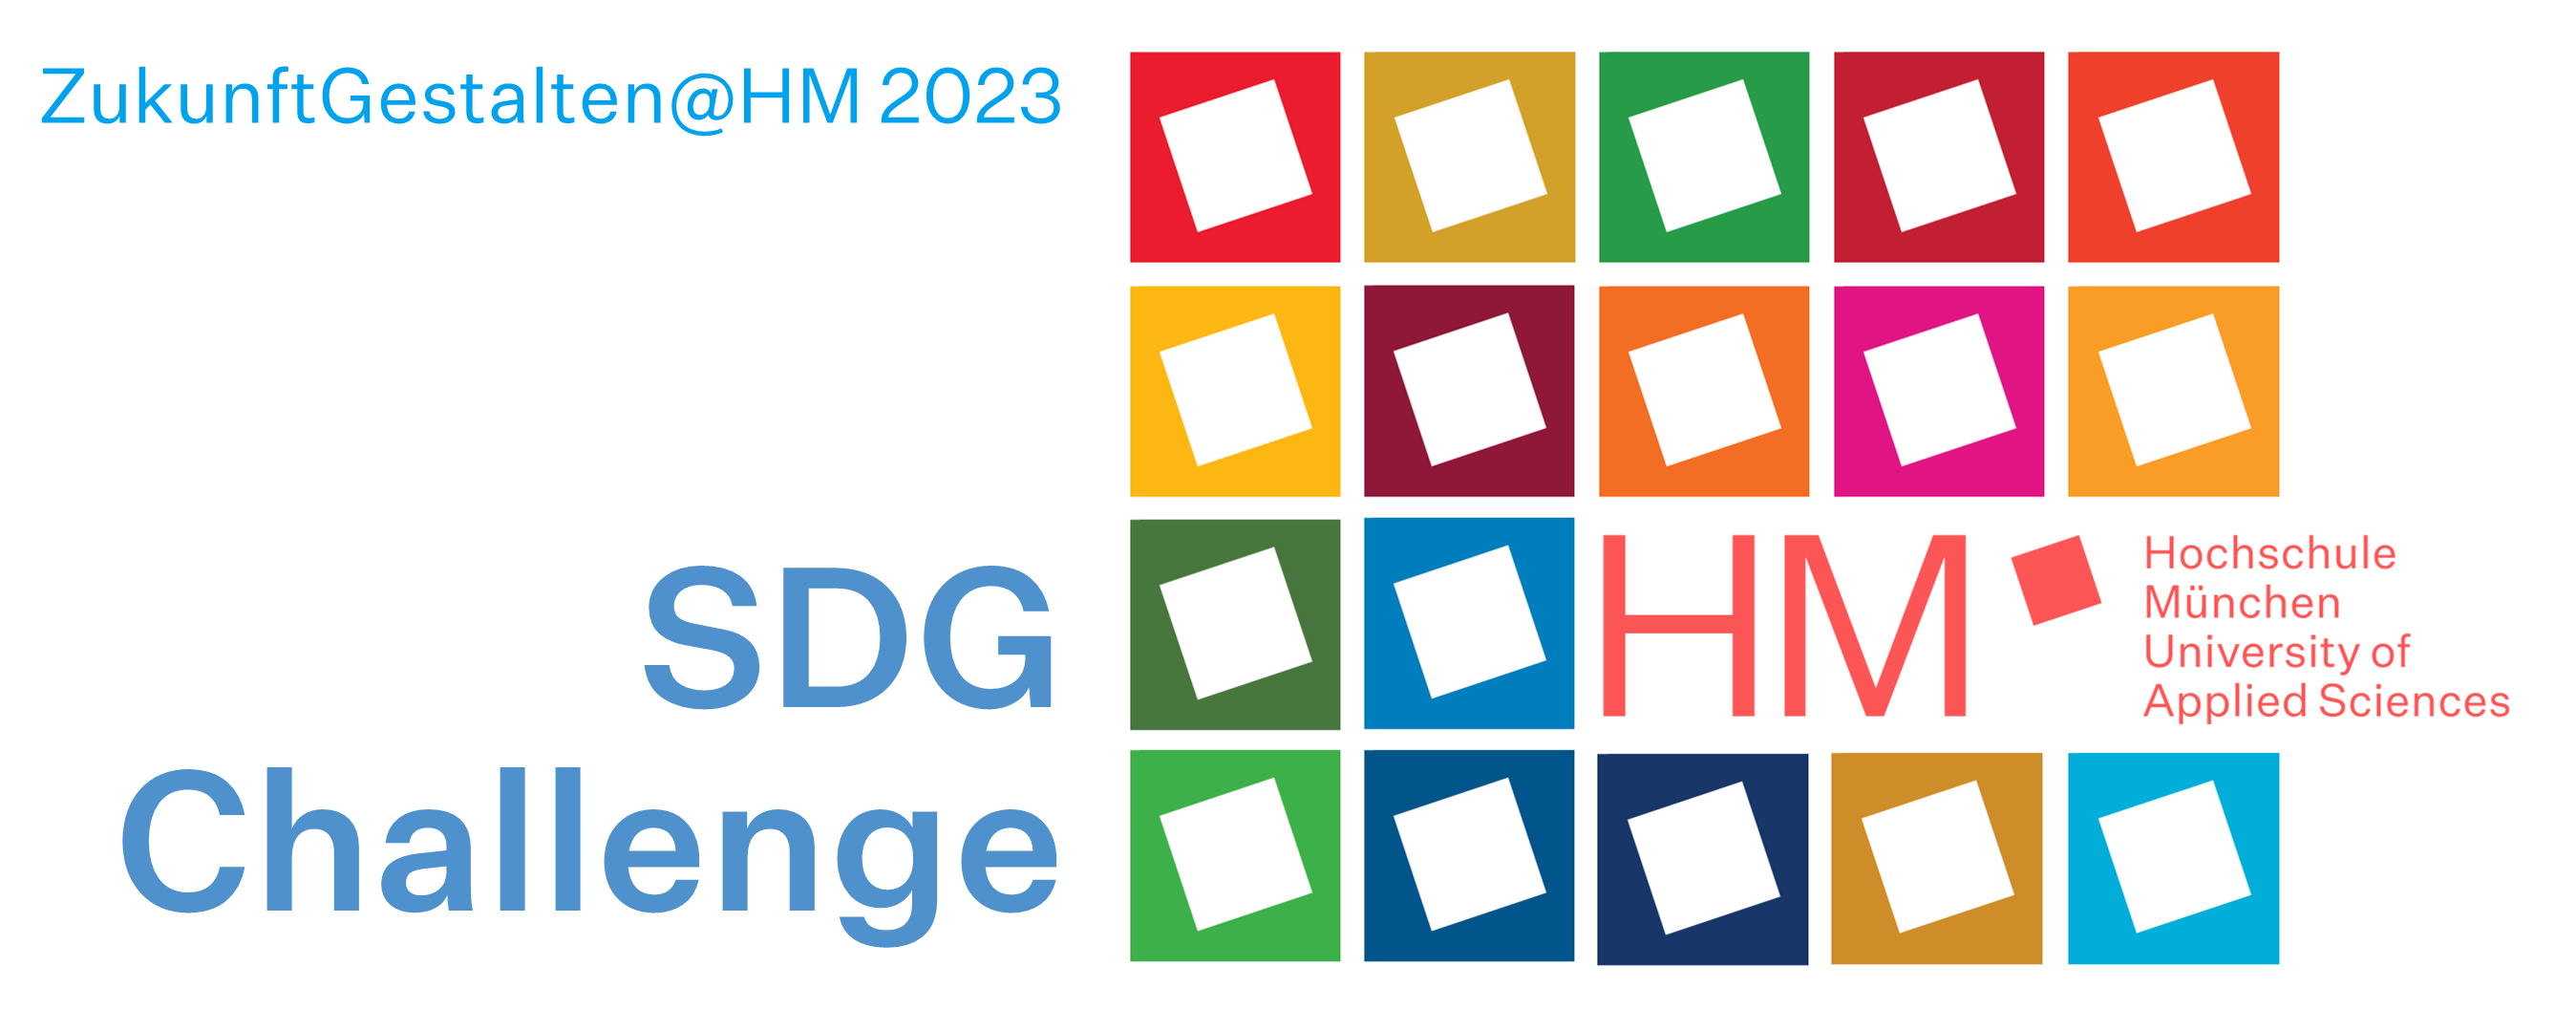 ZukunftGestalten@HM SoSe23 - SDG Challenge  (C) Hochschule Mnchen